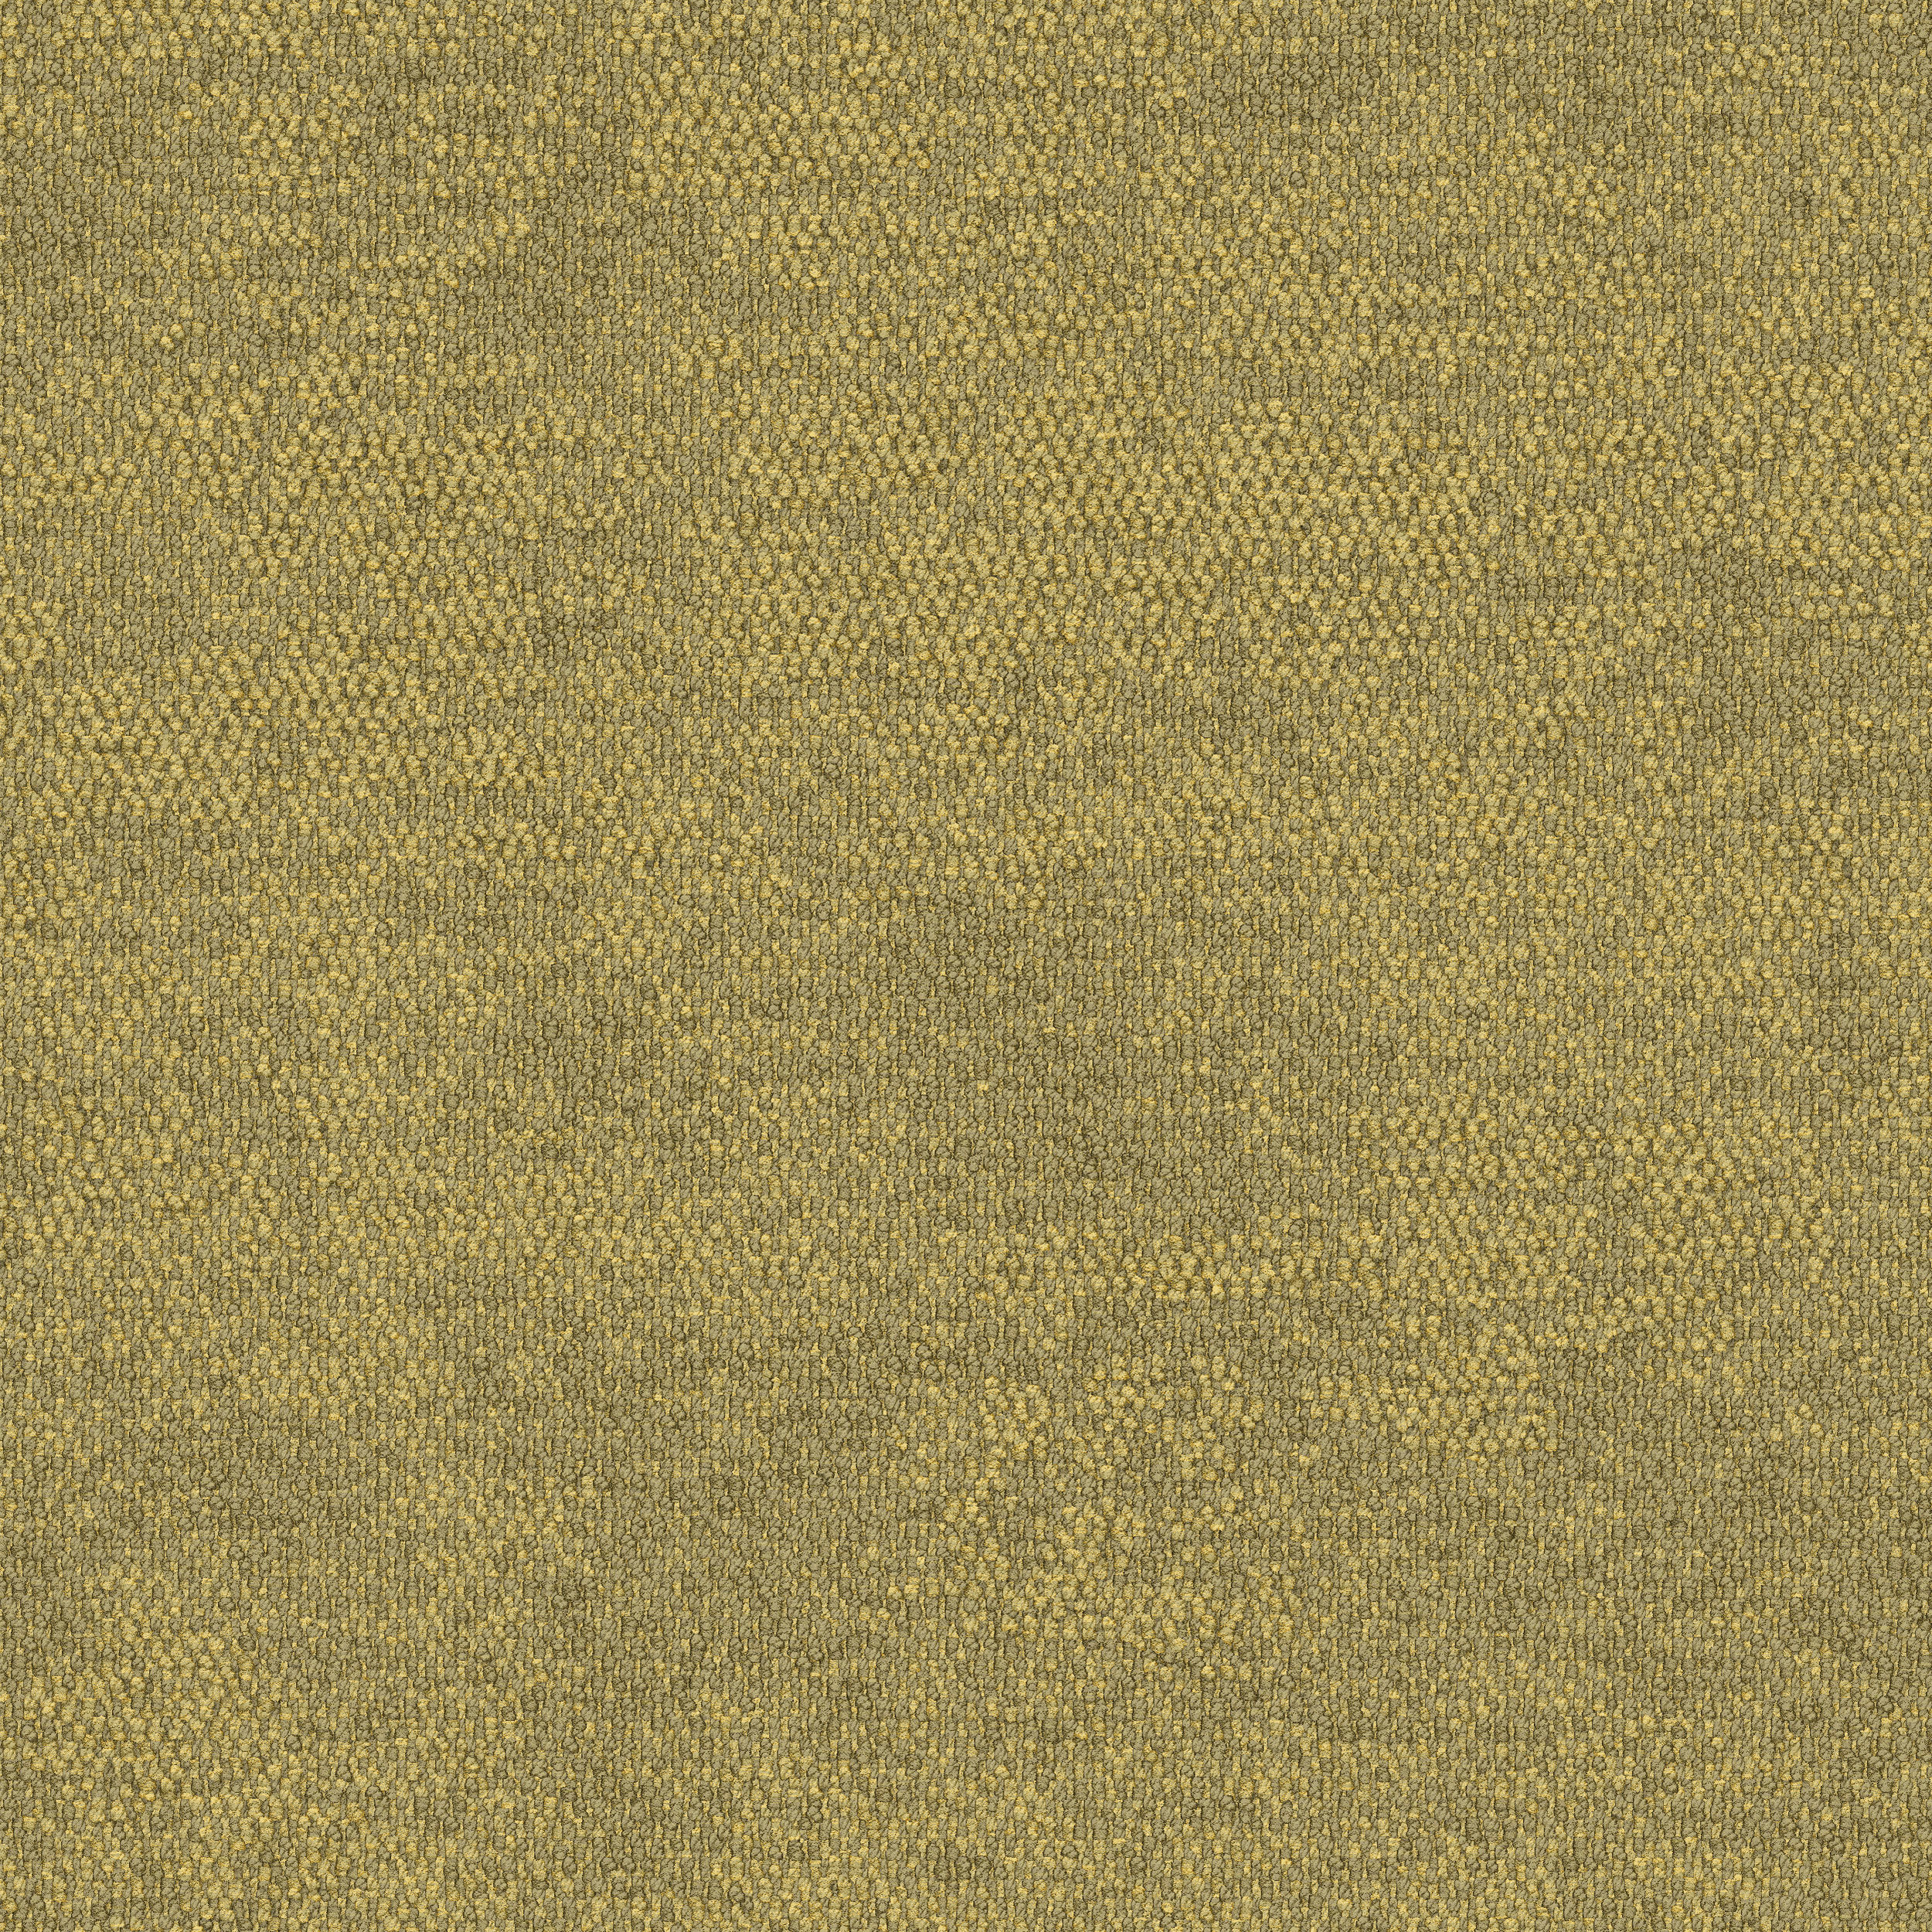 2525-013-000 Spinifex Grass